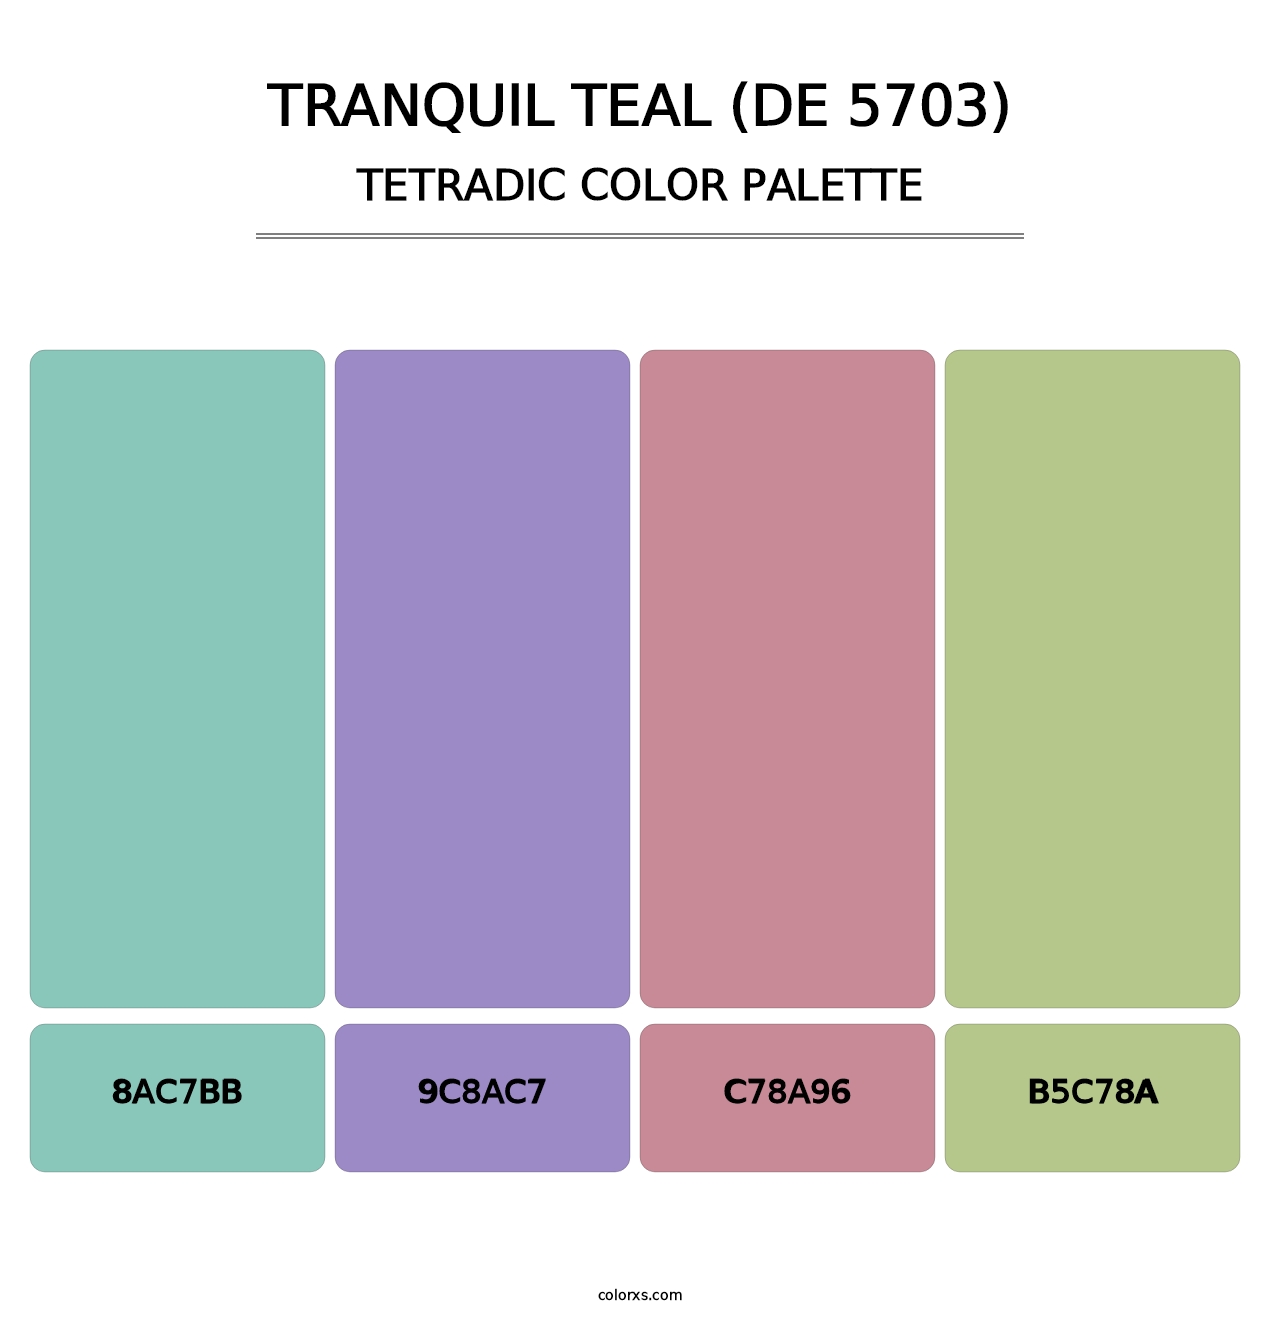 Tranquil Teal (DE 5703) - Tetradic Color Palette